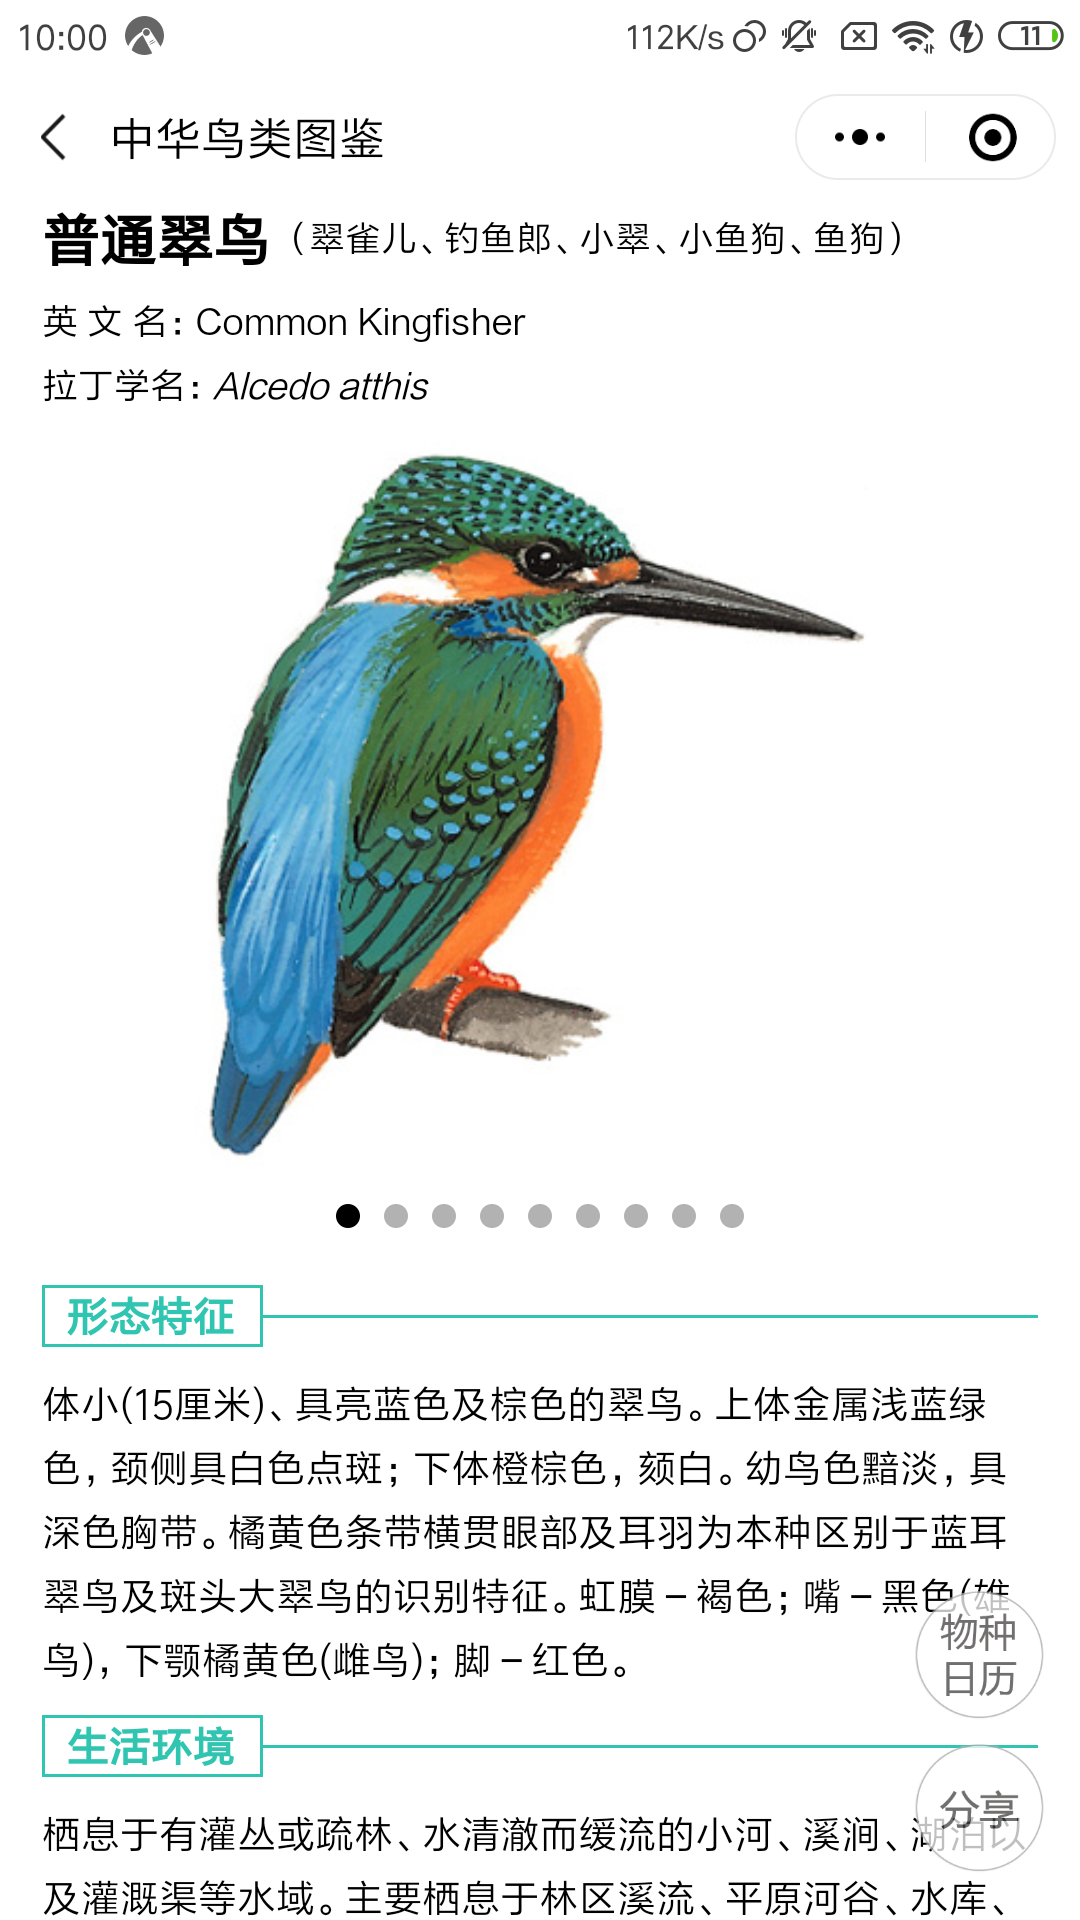 人民画报联合摄鸟人网站推出全新的微信栏目——《鸟类与环境》（第三期） - 鸟类与环境 - 摄鸟人网 - 摄鸟人网